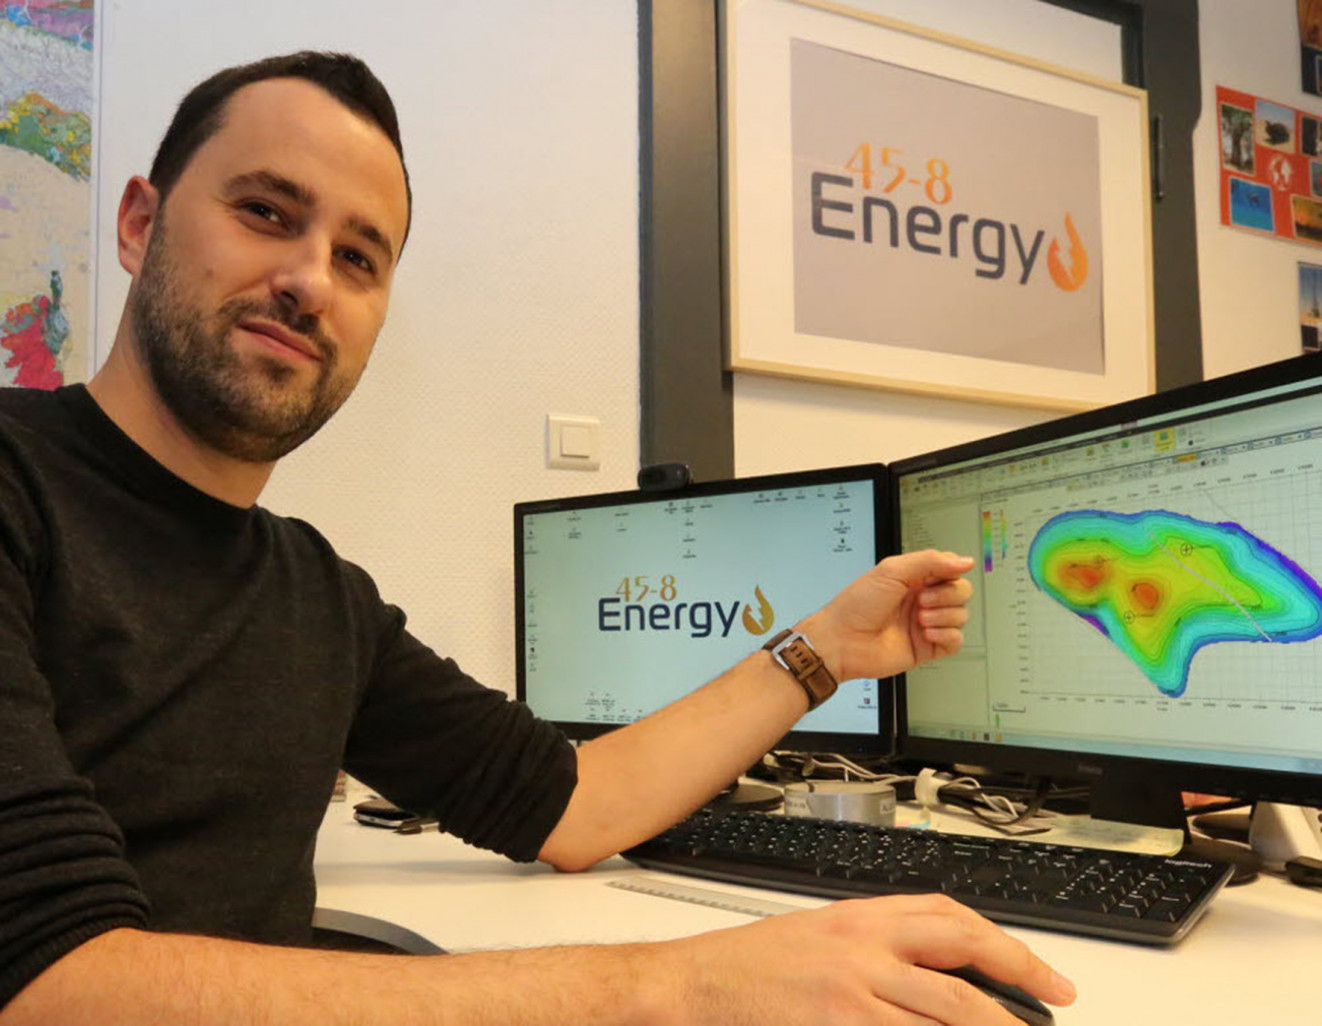 Nicolas Pélissier, fondateur de la start-up messine 45-8 Energy.